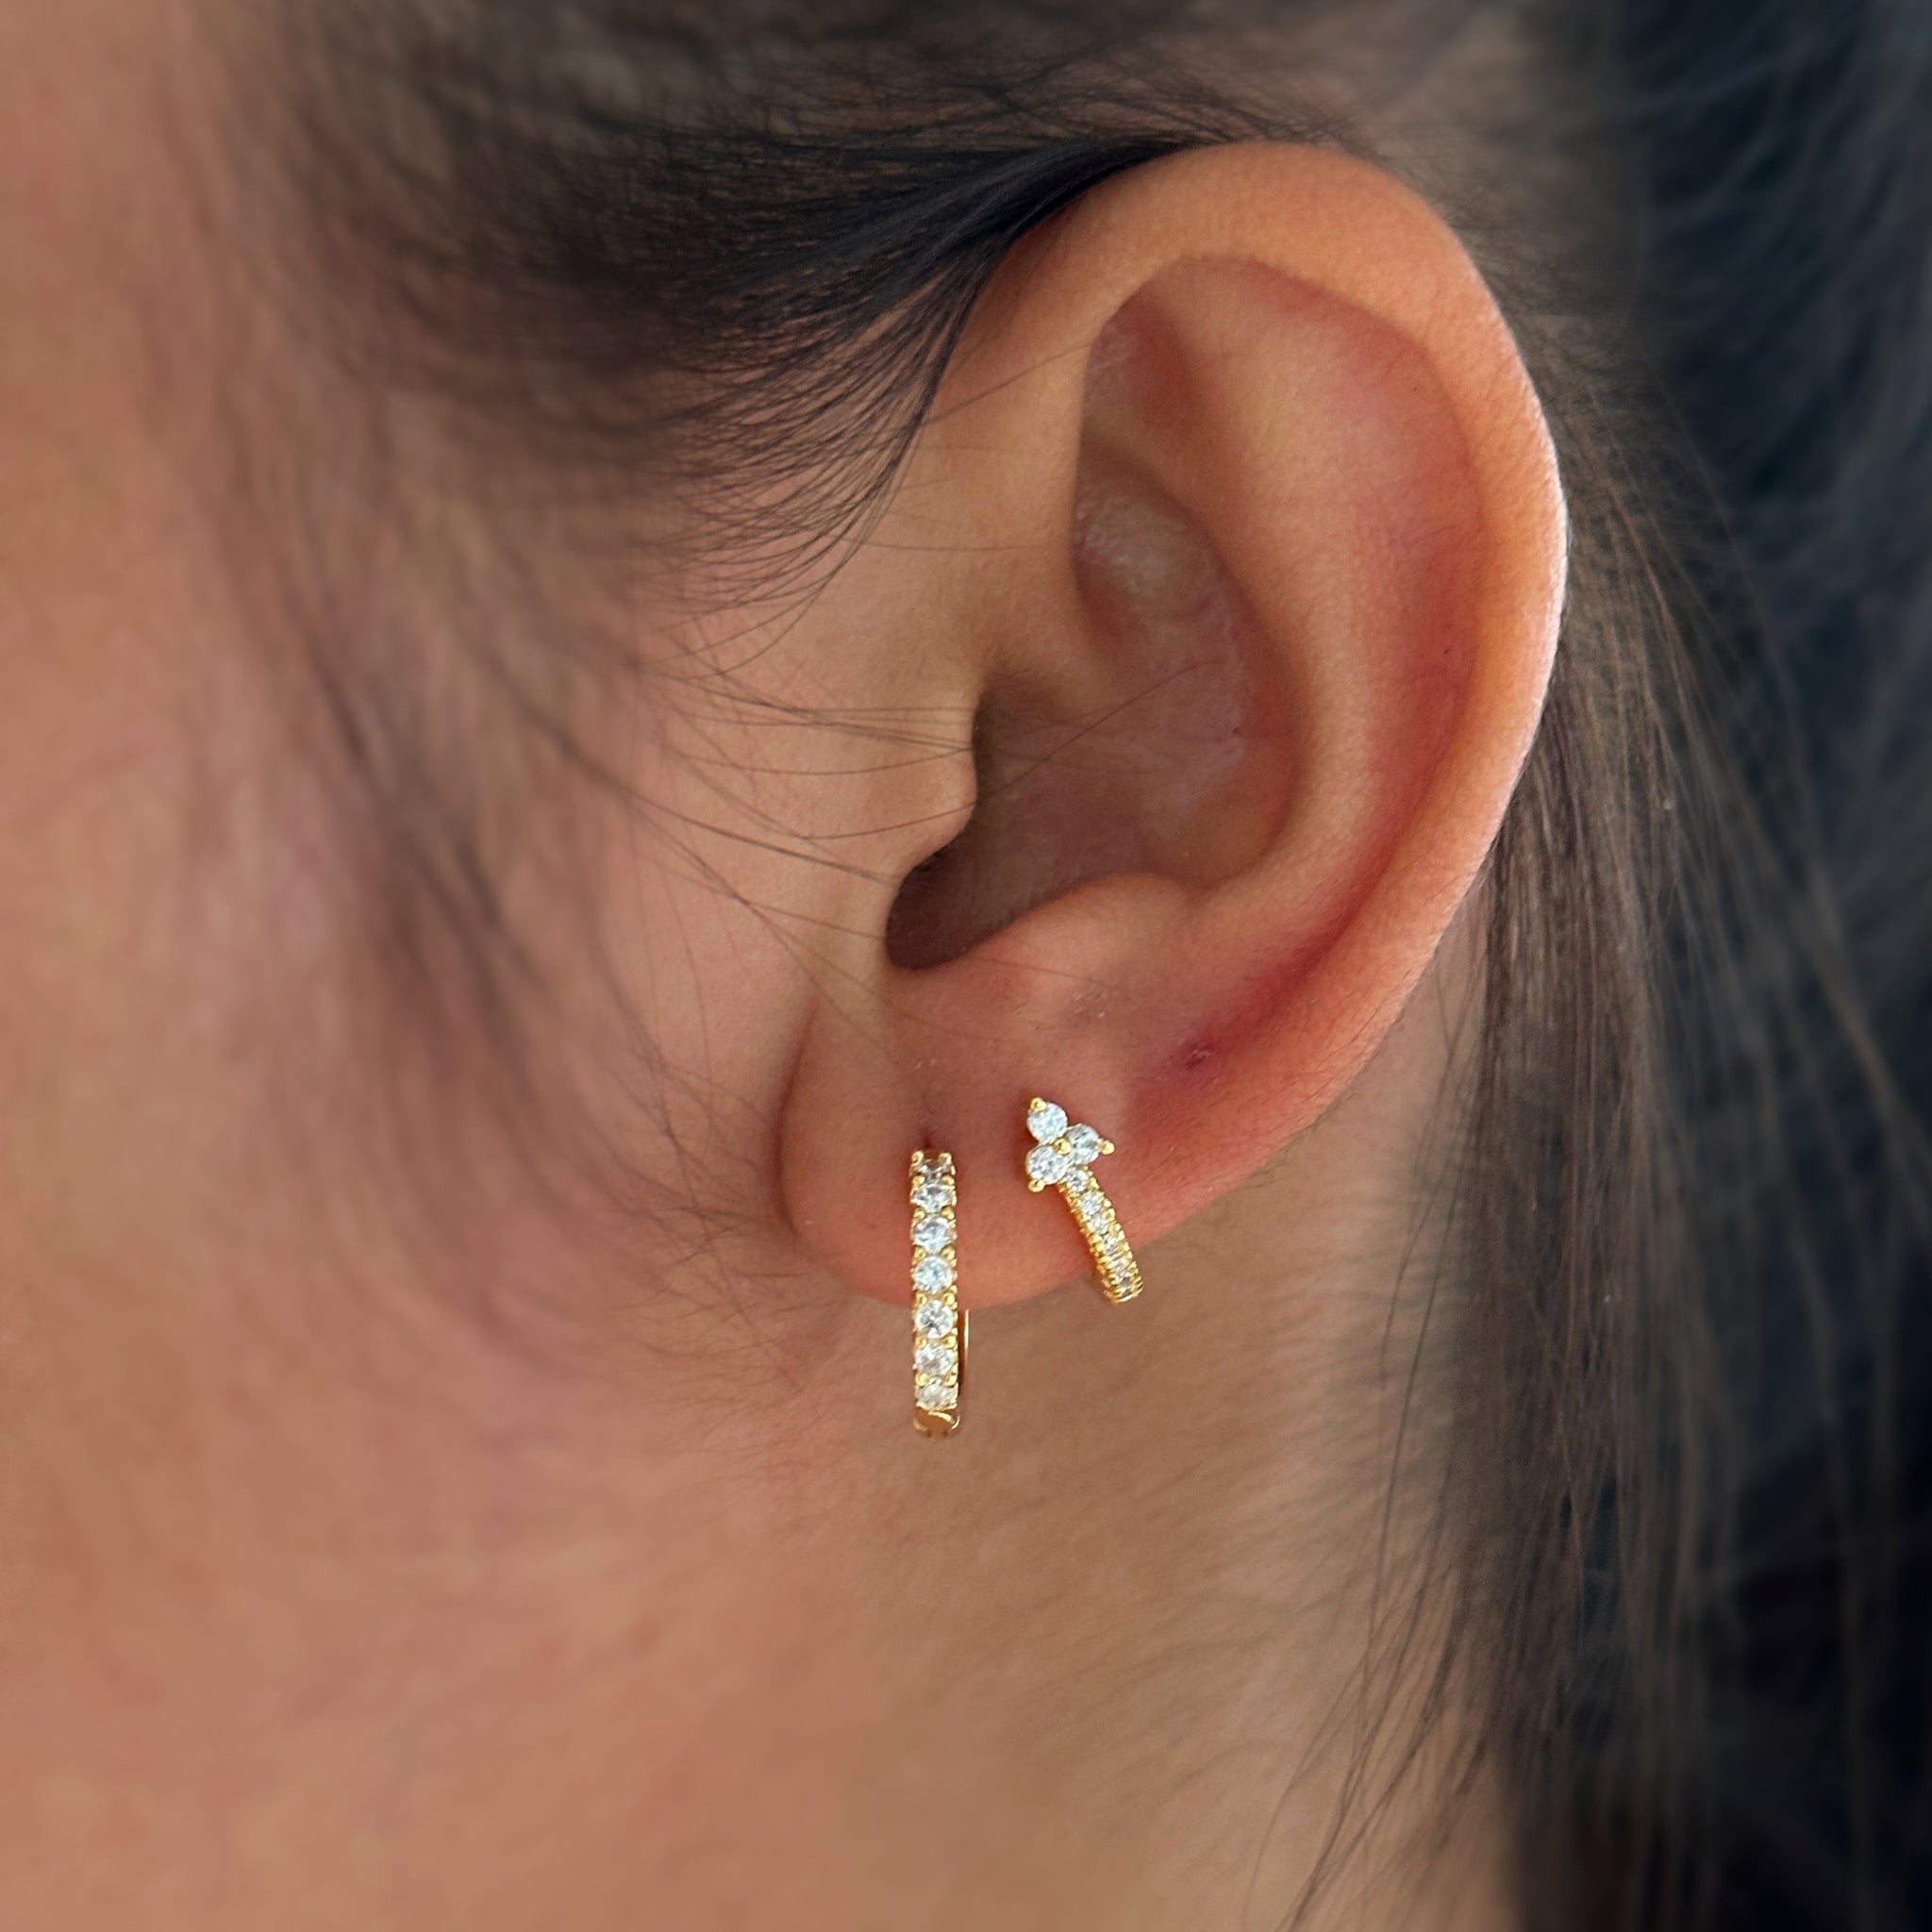 Buy Minimalist Arrow Chain Threader Ear Jacket Earrings Online in India -  Etsy